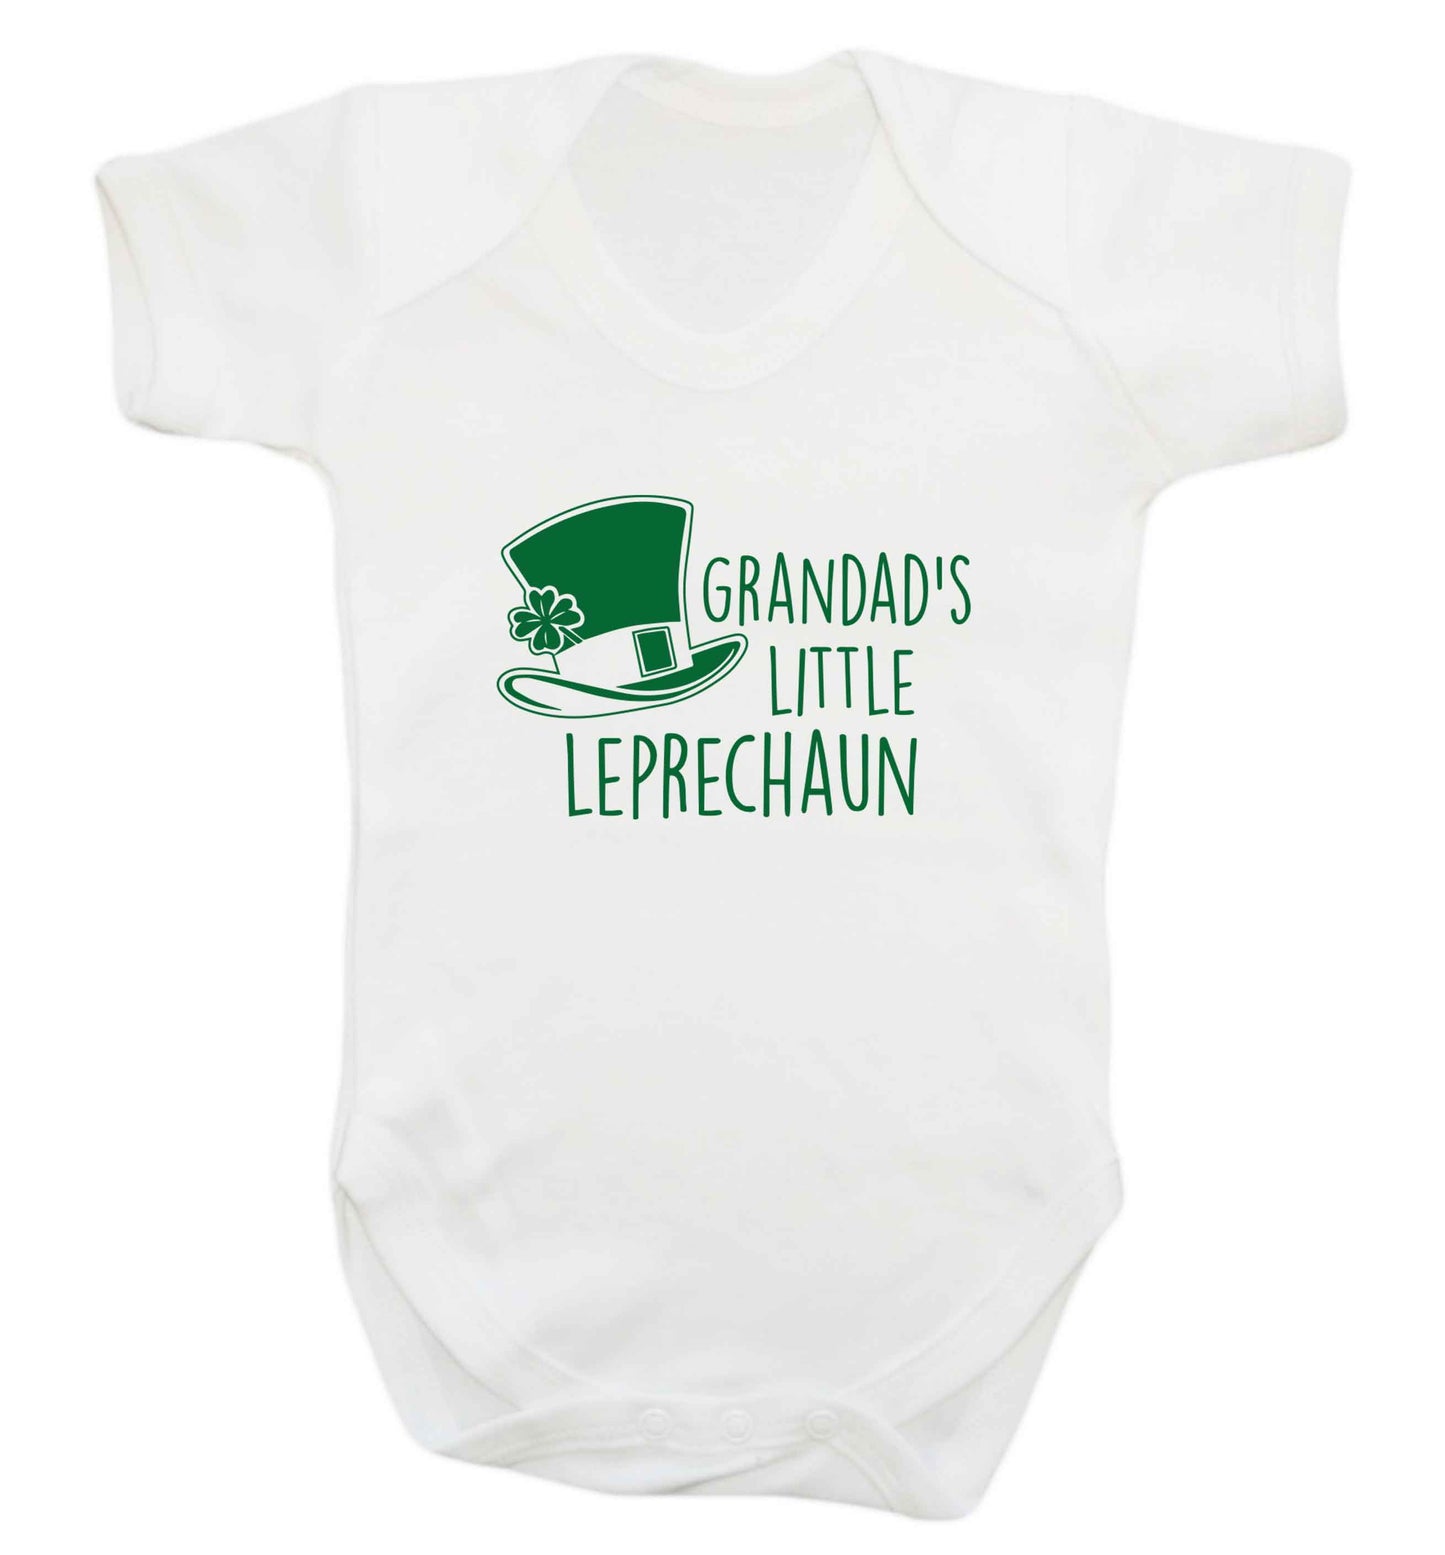 Grandad's little leprechaun baby vest white 18-24 months